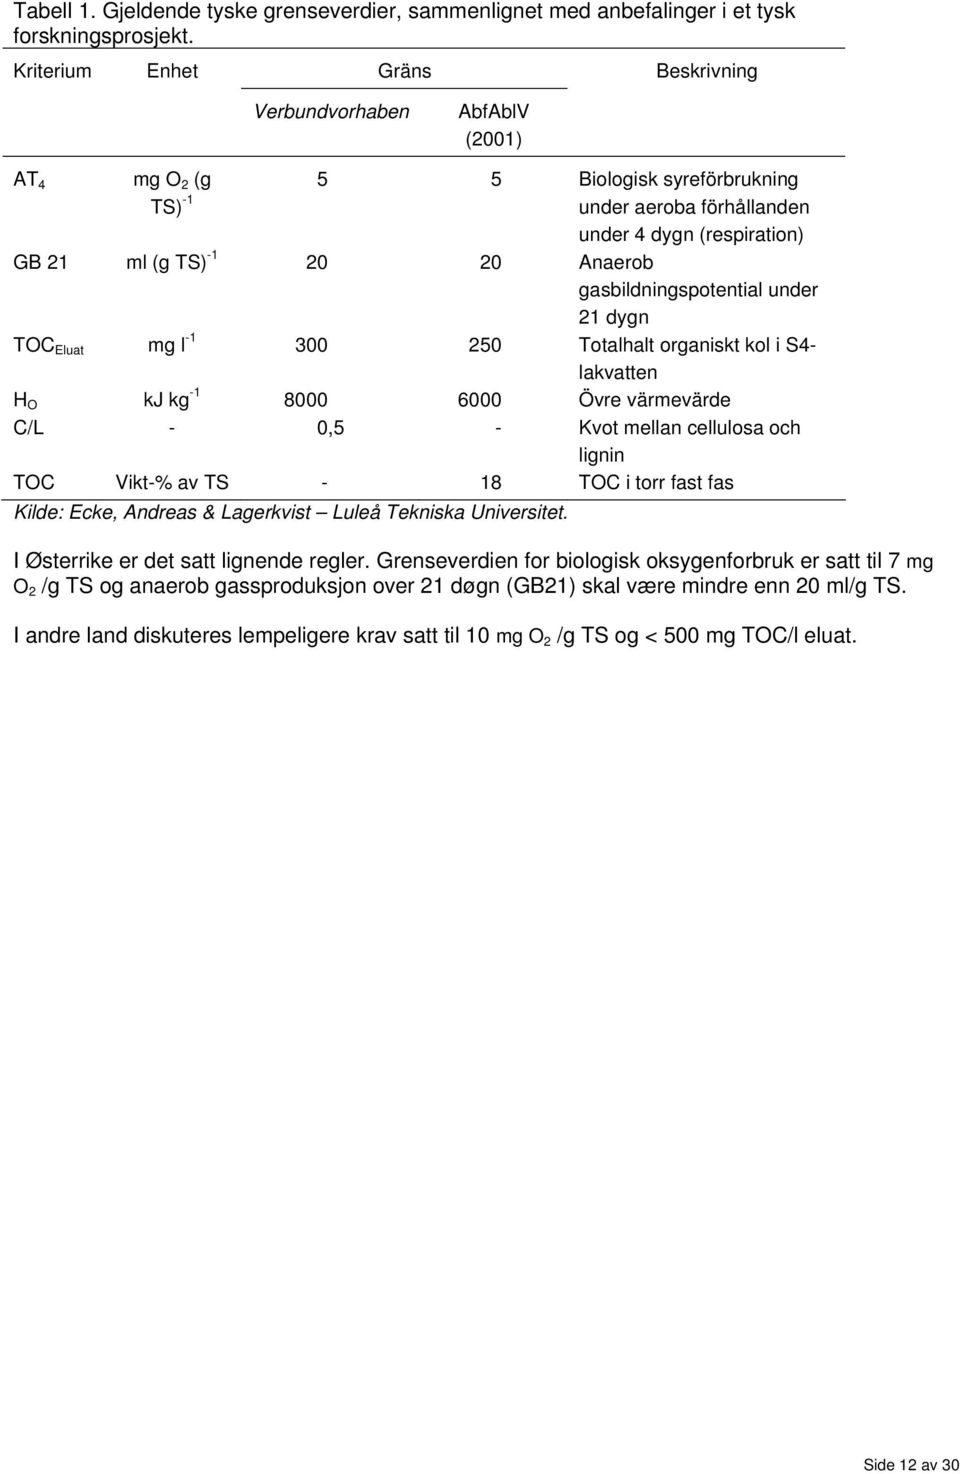 Anaerob gasbildningspotential under 21 dygn TOC Eluat mg l -1 300 250 Totalhalt organiskt kol i S4- lakvatten H O kj kg -1 8000 6000 Övre värmevärde C/L - 0,5 - Kvot mellan cellulosa och lignin TOC